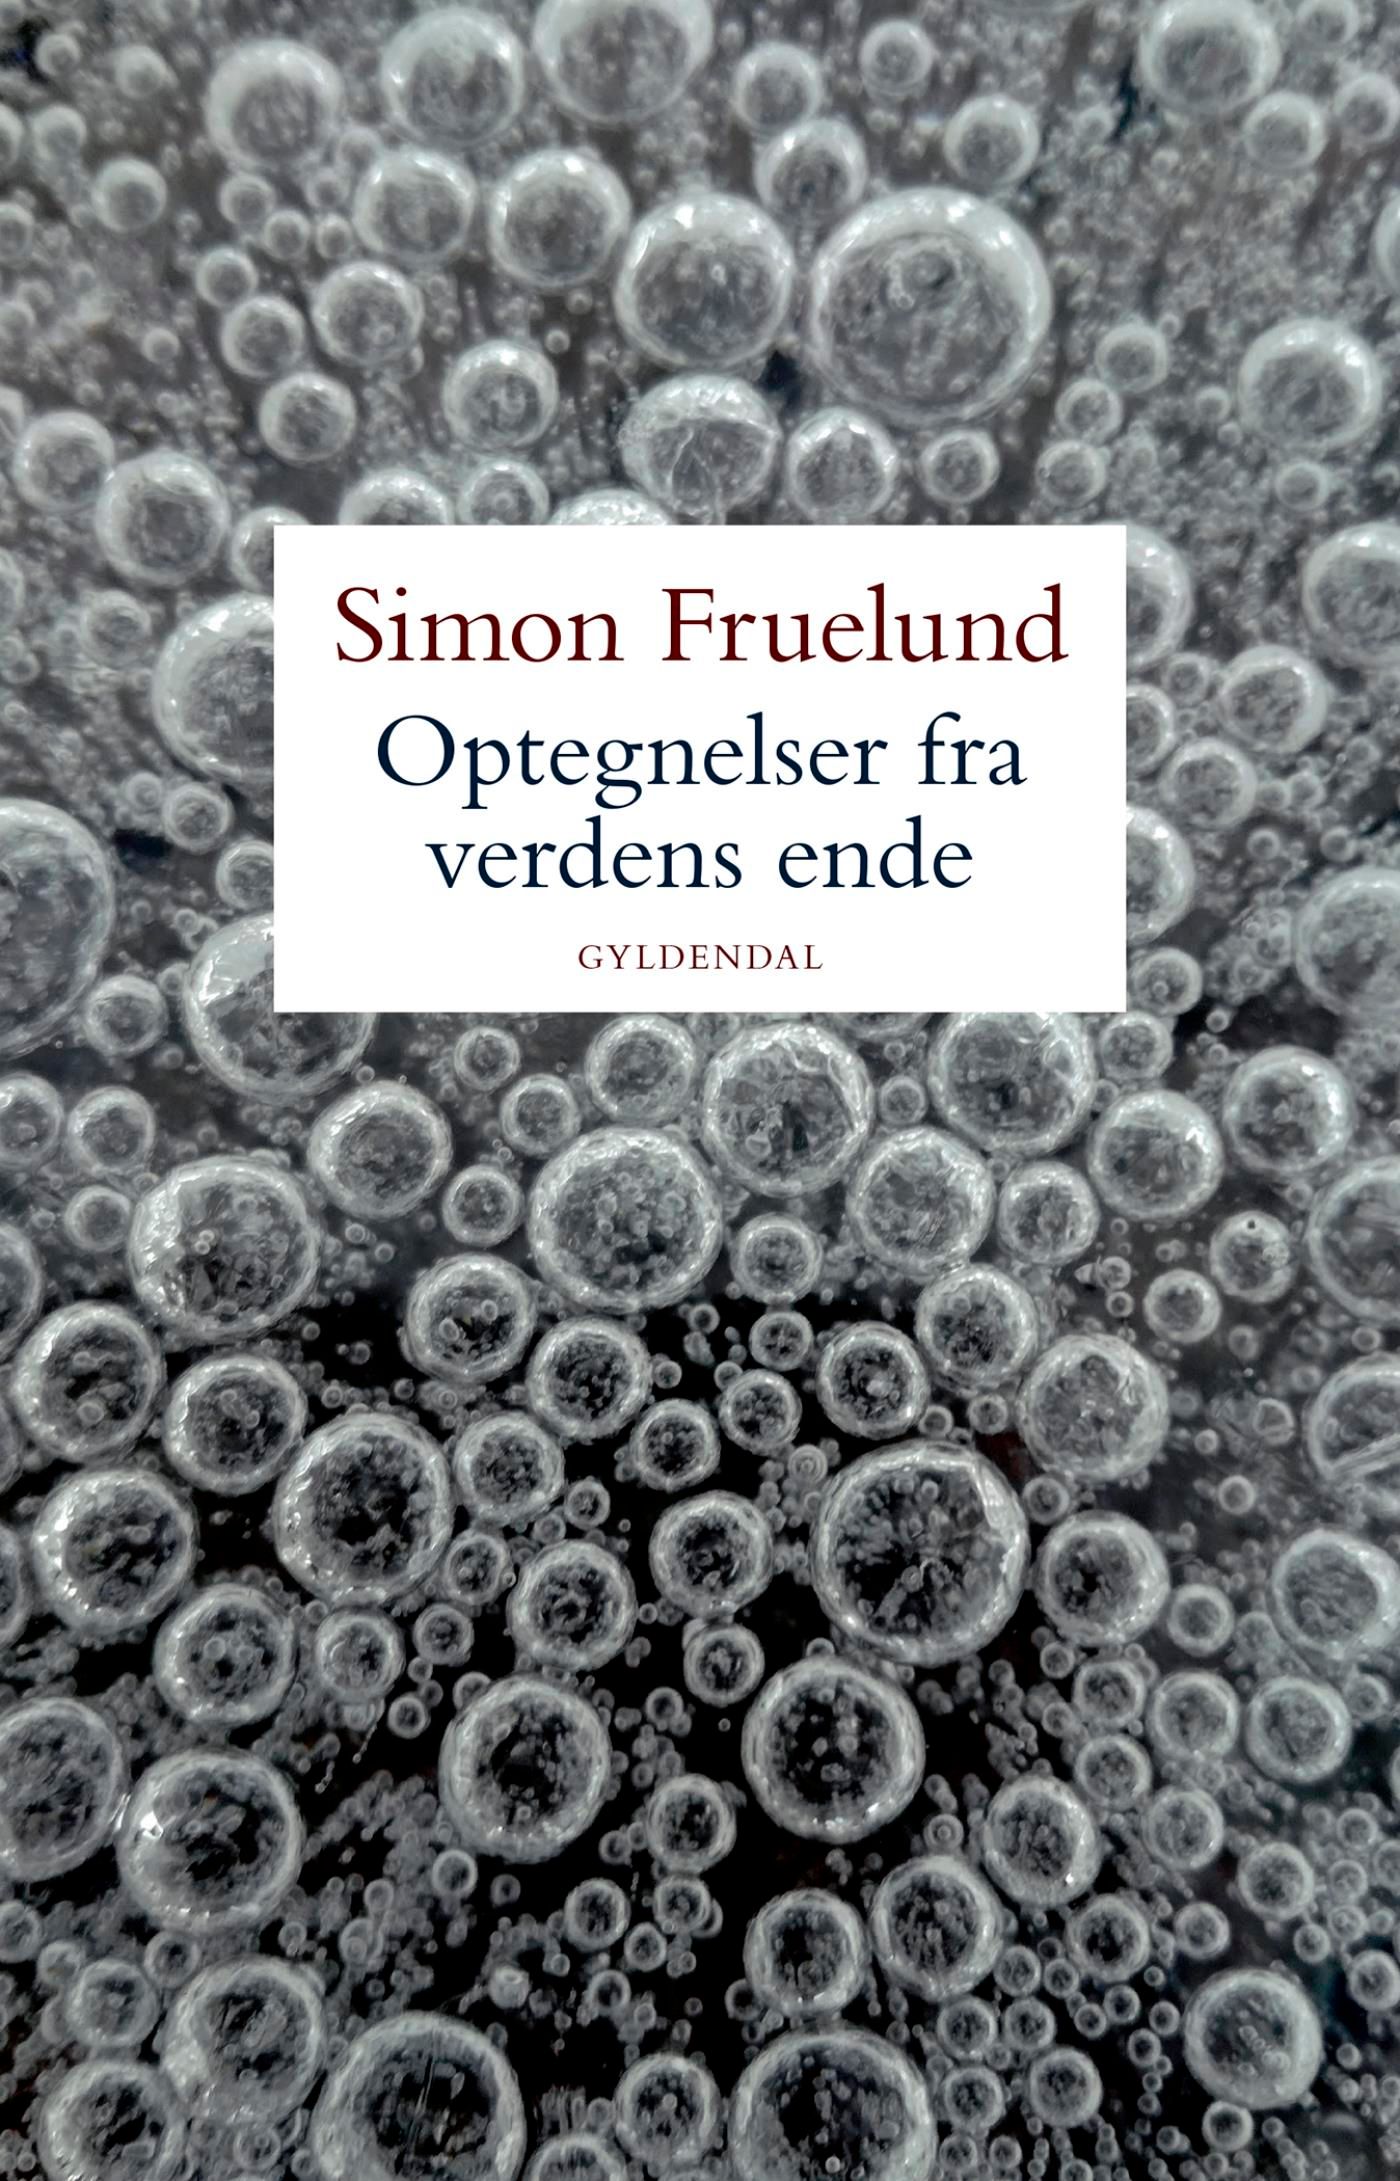 Optegnelser fra verdens ende, e-bog af Simon Fruelund